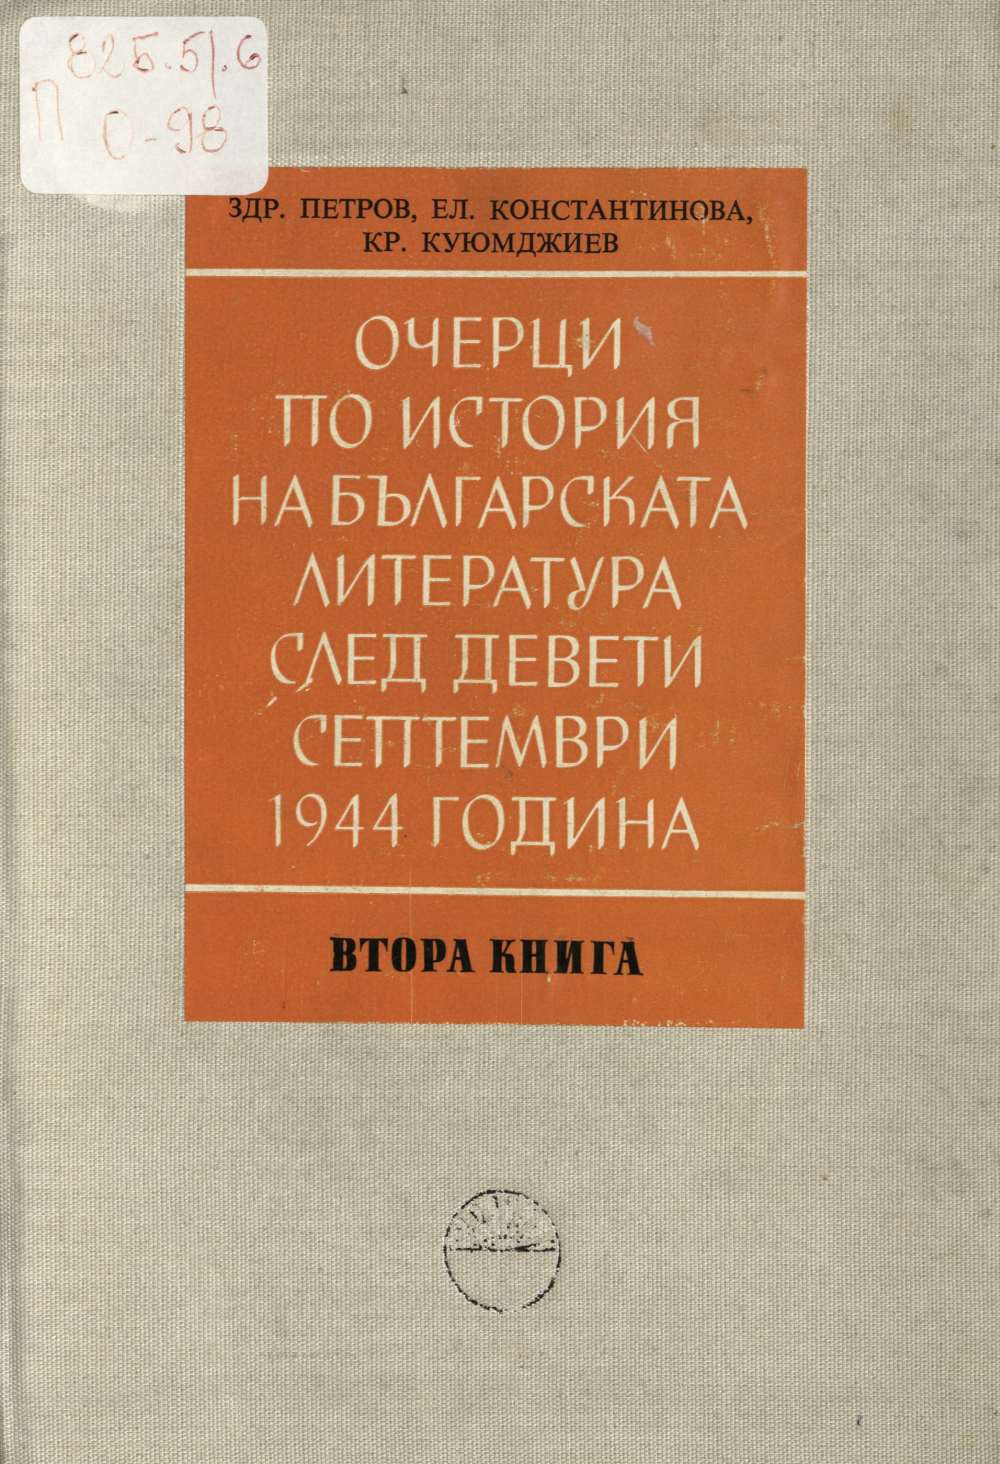 Очерци по история на българската литература след Девети септември 1944 година. Част втора